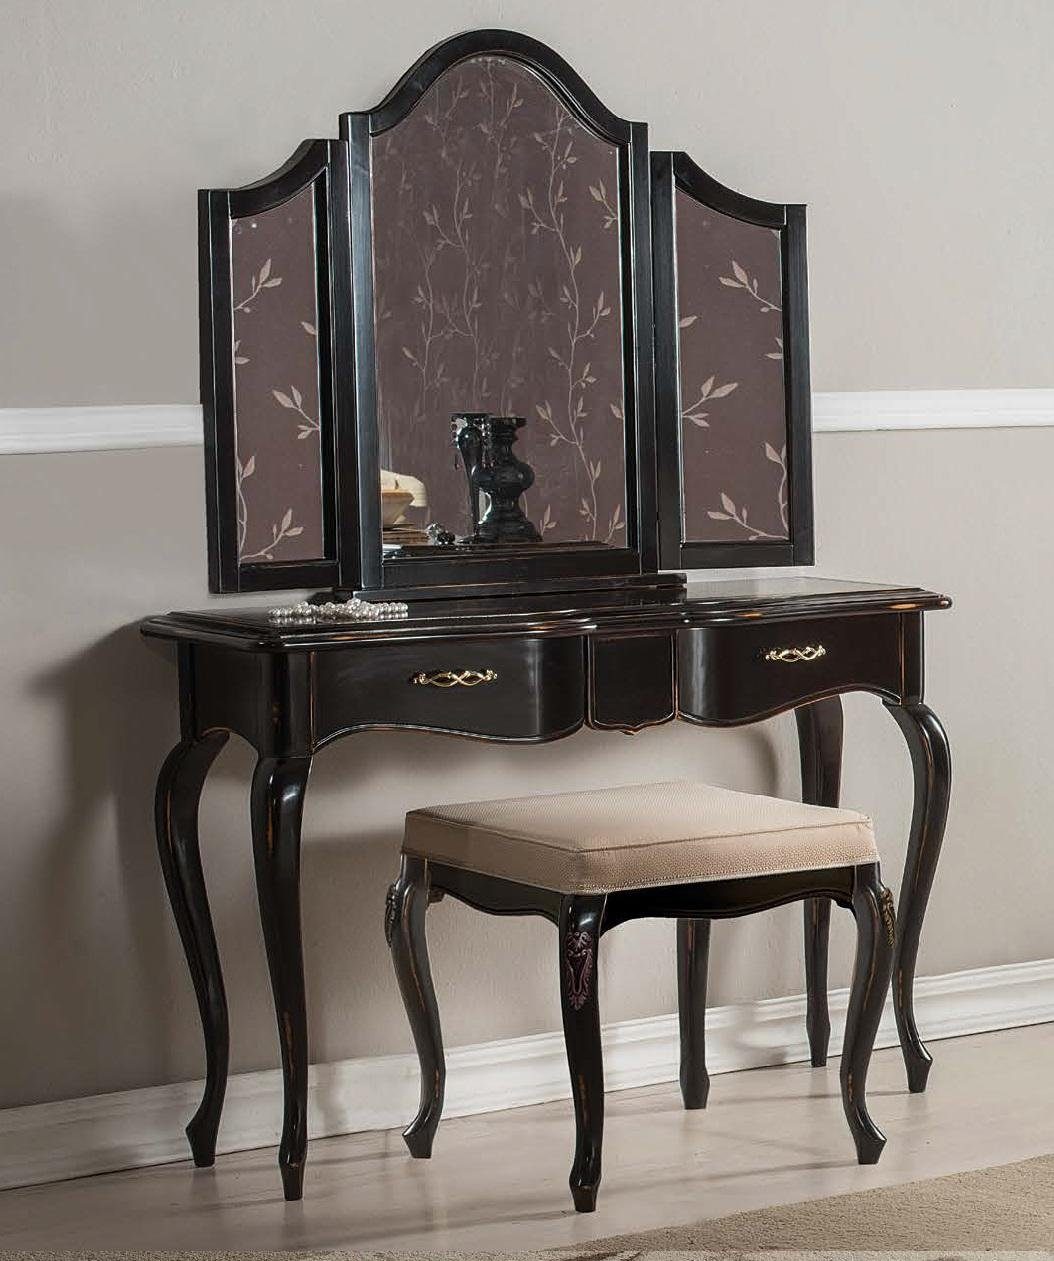 Stil Tisch Konsole Möbel Italienisch JVmoebel StileElisa Konsolentisch, Spiegel Holz